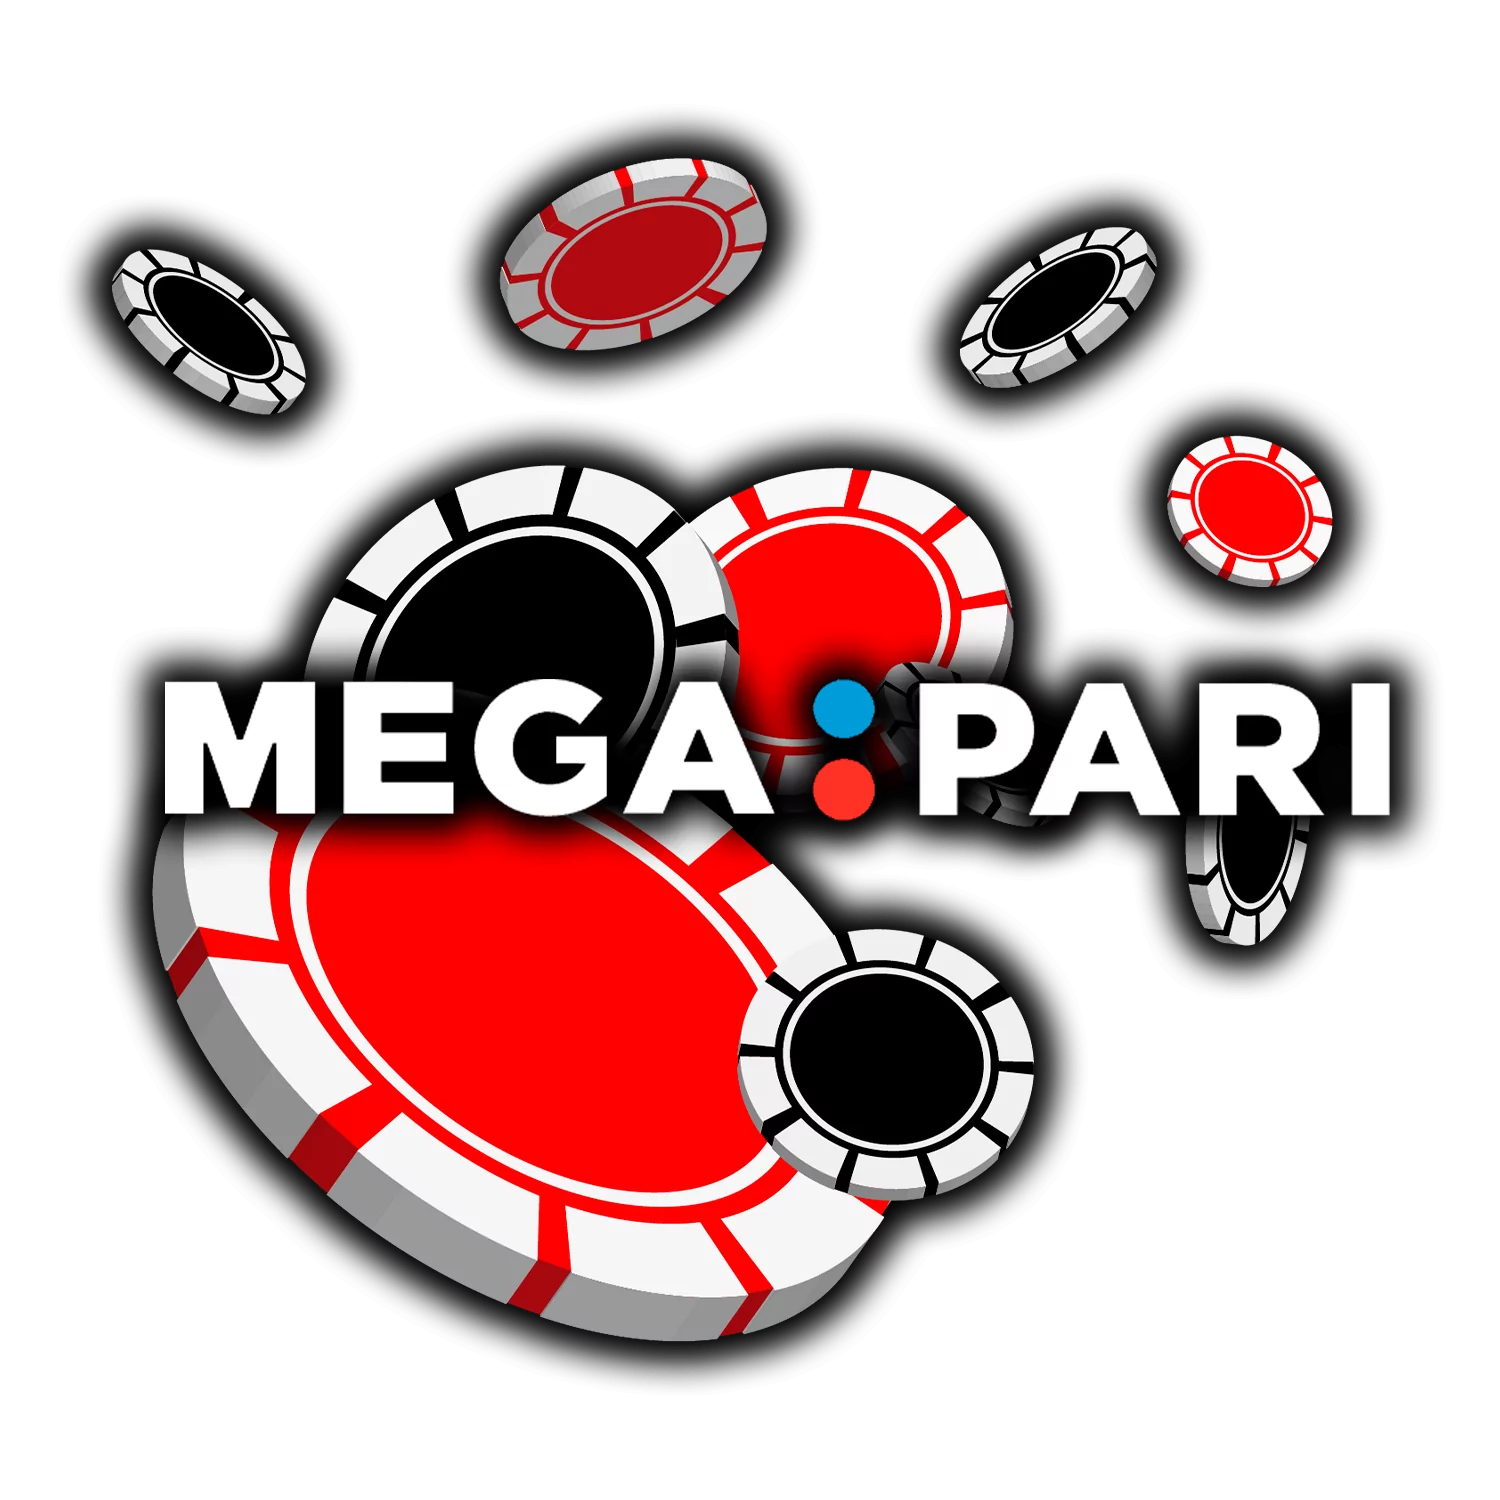 Mega Pari is a legal online casino in India.